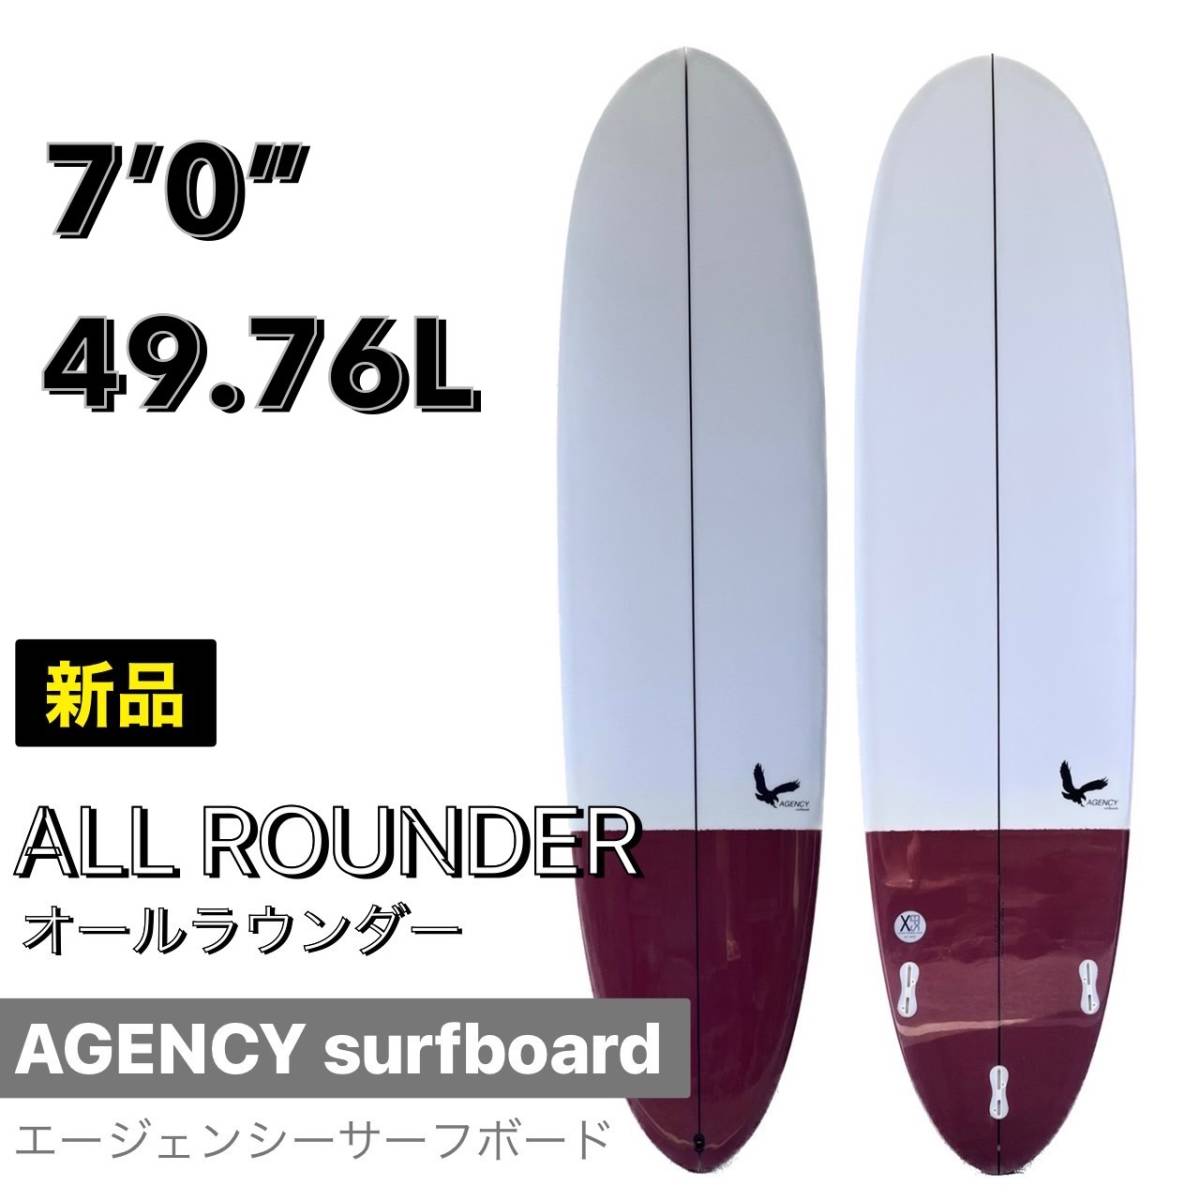 【★新品未使用★】7'0” ALL ROUNDER エージェンシー/Agency surfboard サーフボード オールラウンダー 小波 お洒落 NEW モデル バイロン